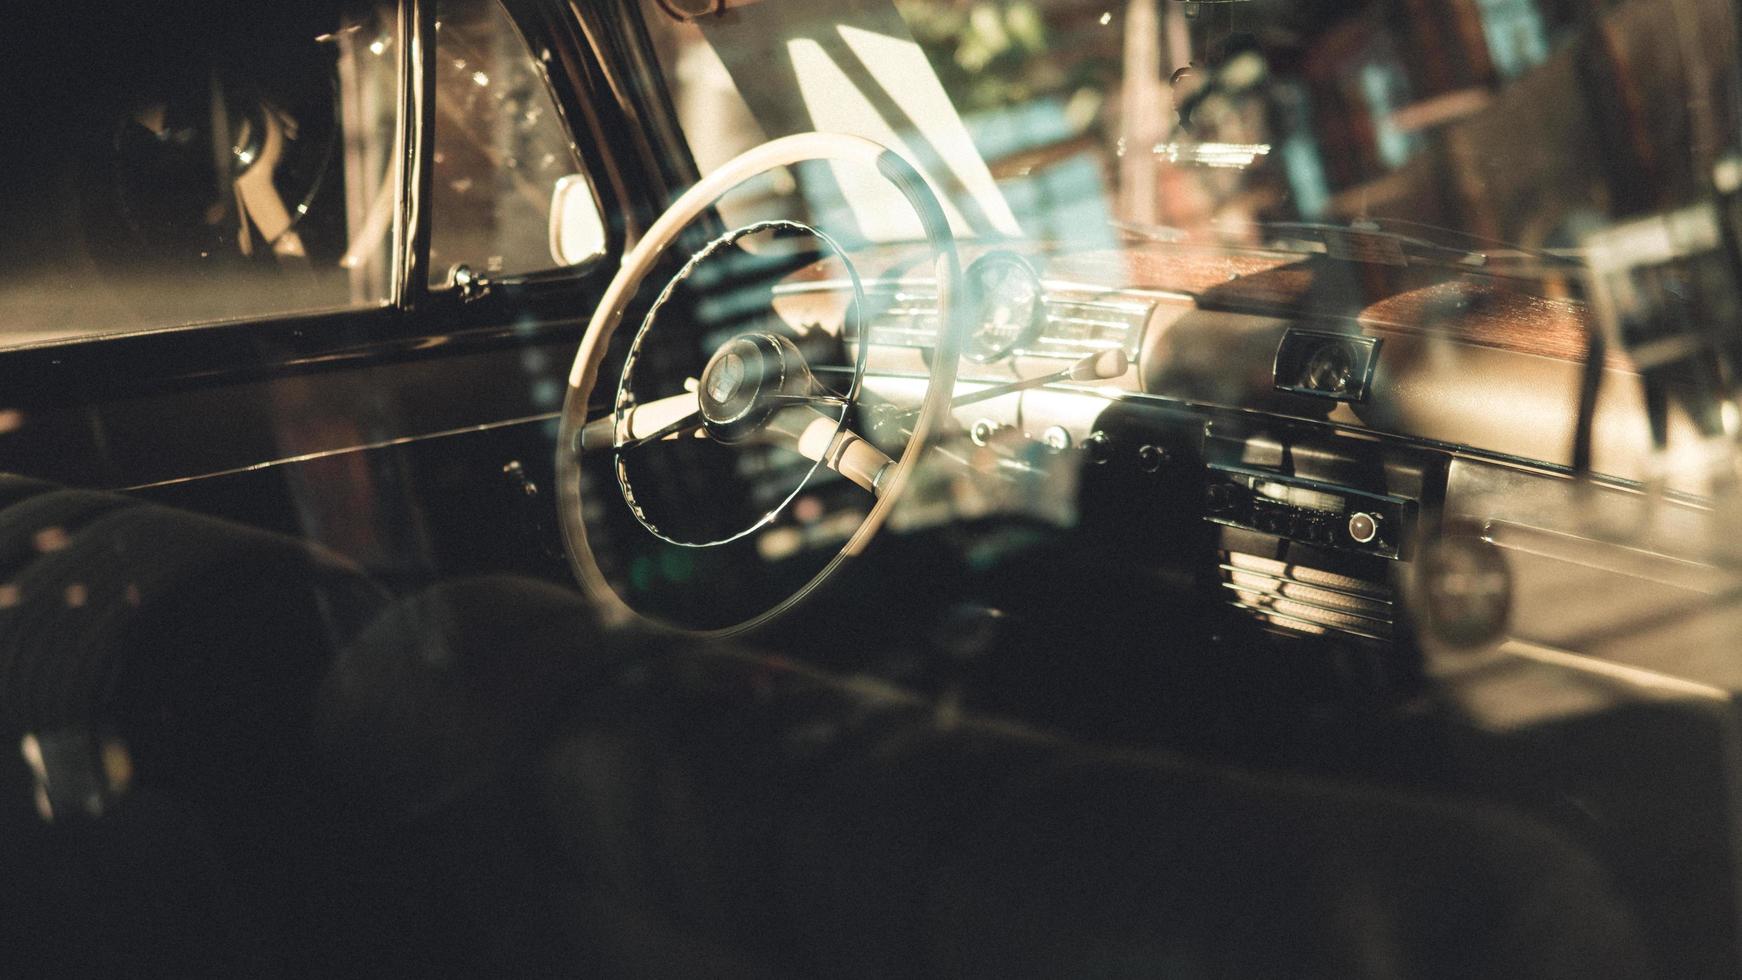 alemanha, 2020 - reflexo na janela de um carro clássico foto